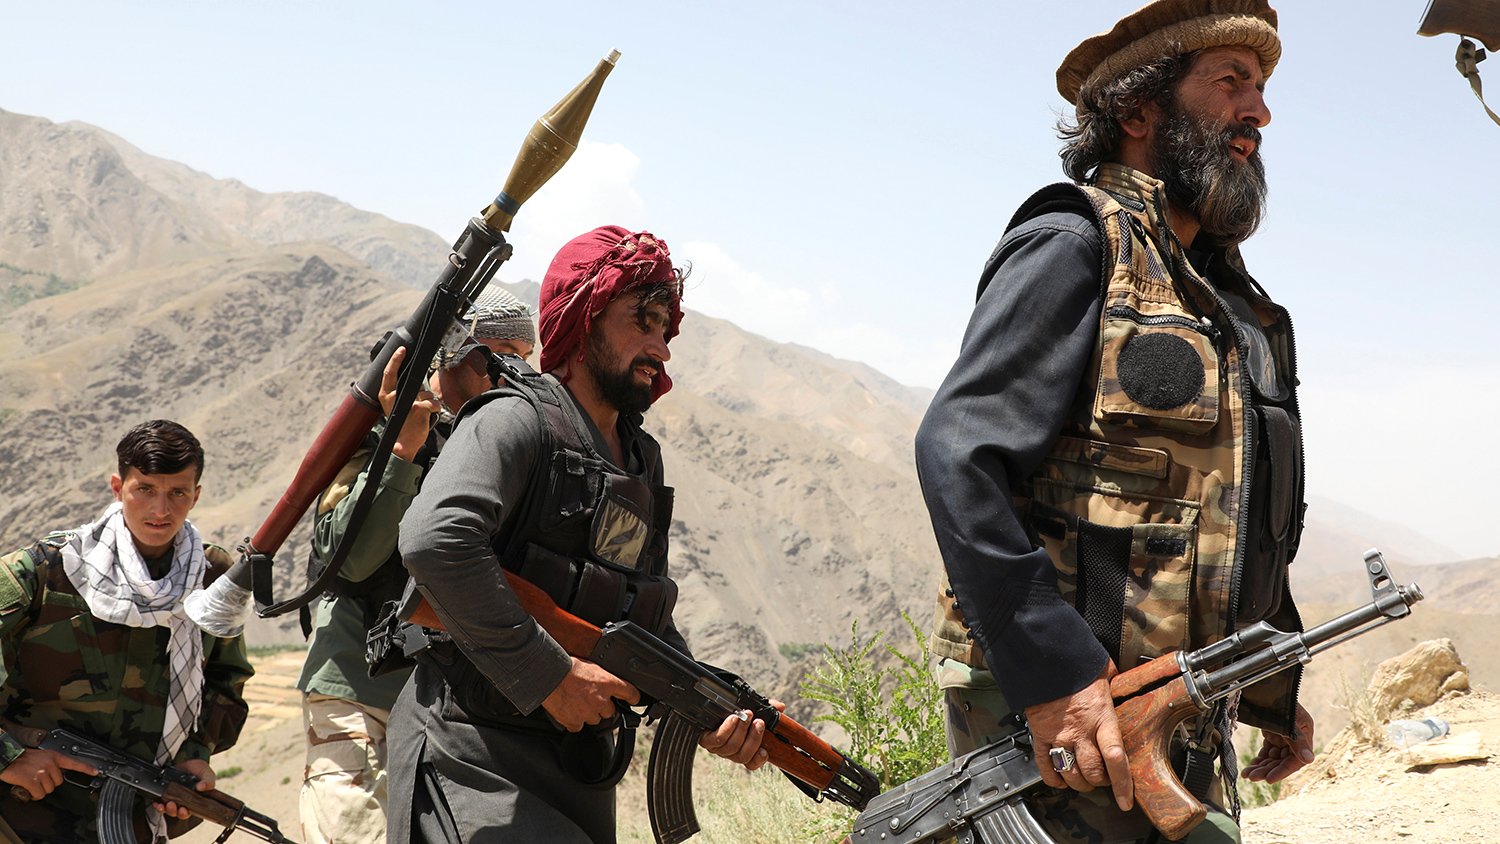 Թալիբները գրավել են Աֆղանստանի նահանգներից մեկի վարչական կենտրոնը